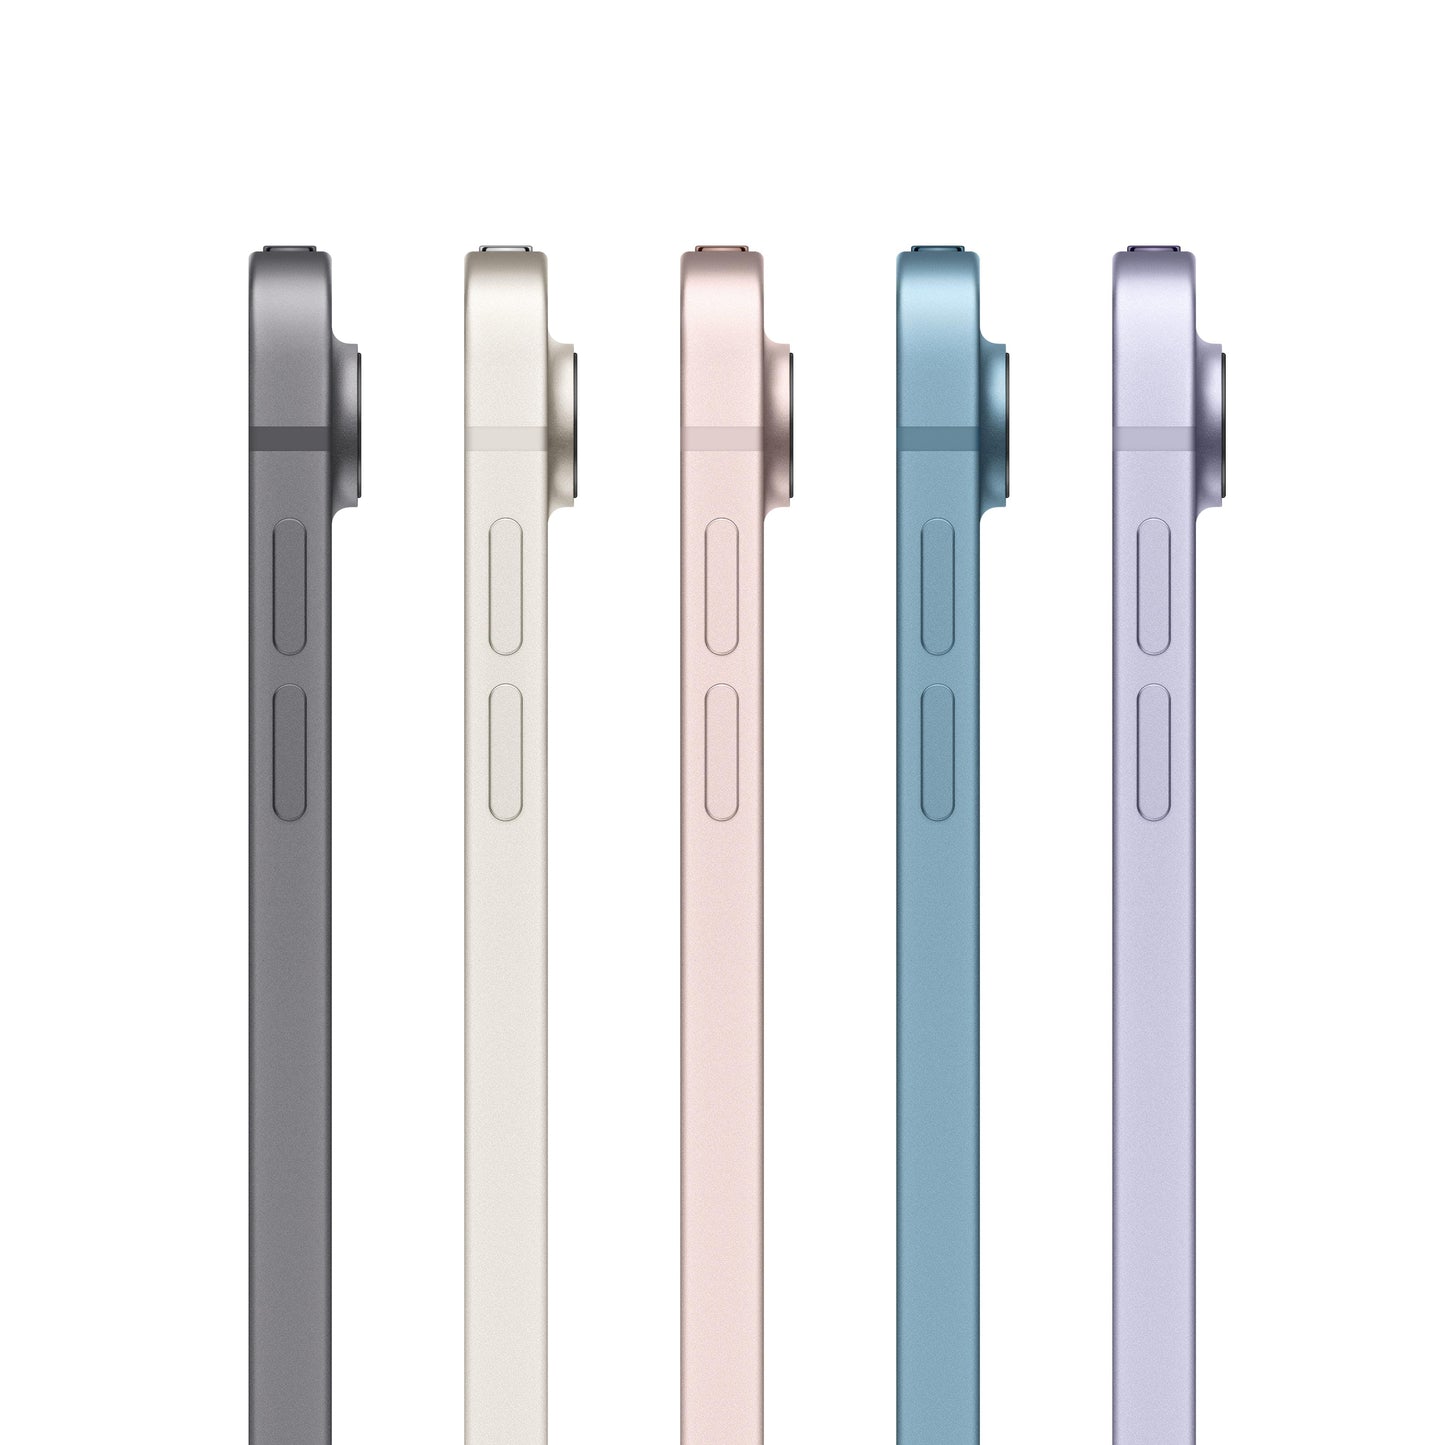 2022 iPad Air Wi-Fi + Cellular 64GB - Purple (5th generation)